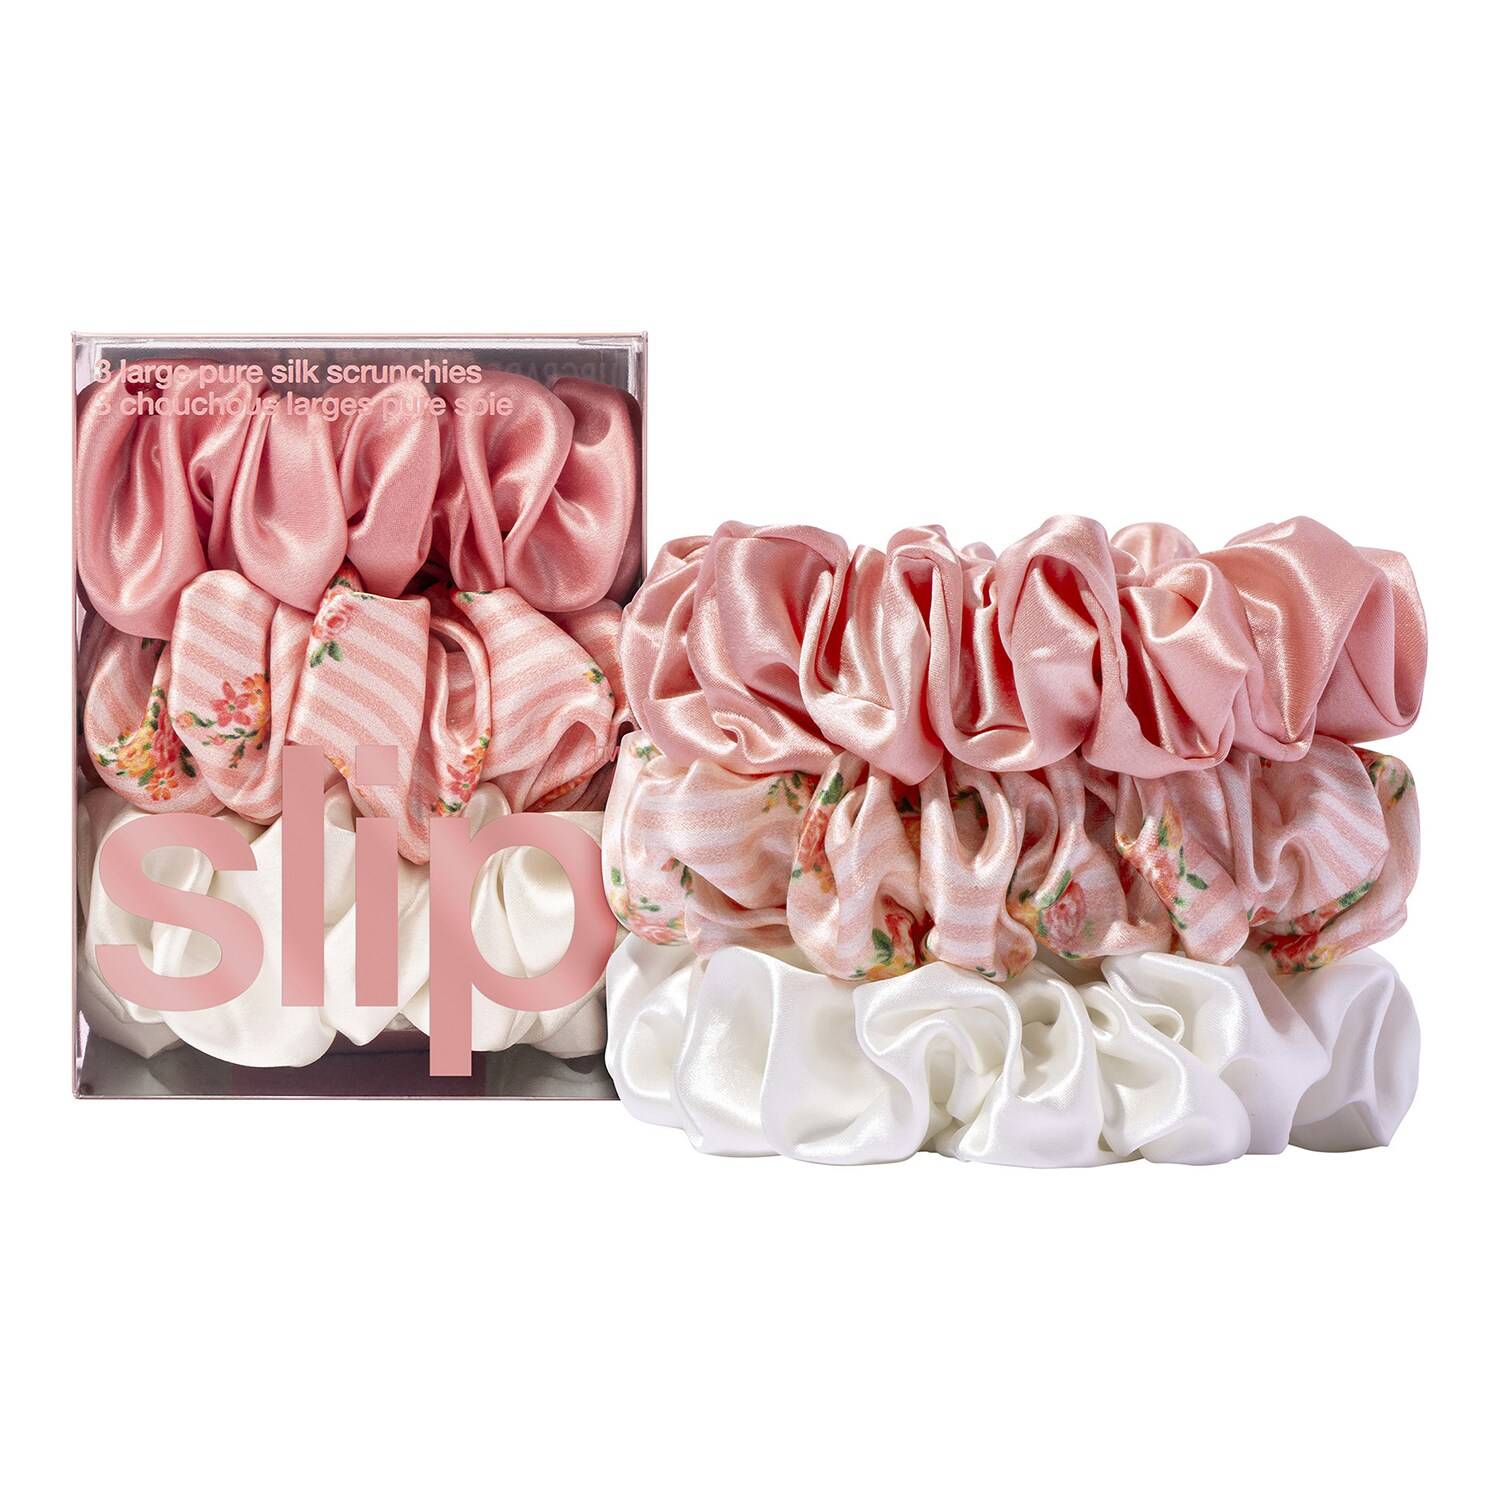 Slip Pure Silk Large Scrunchies - Petal 3 Pieces